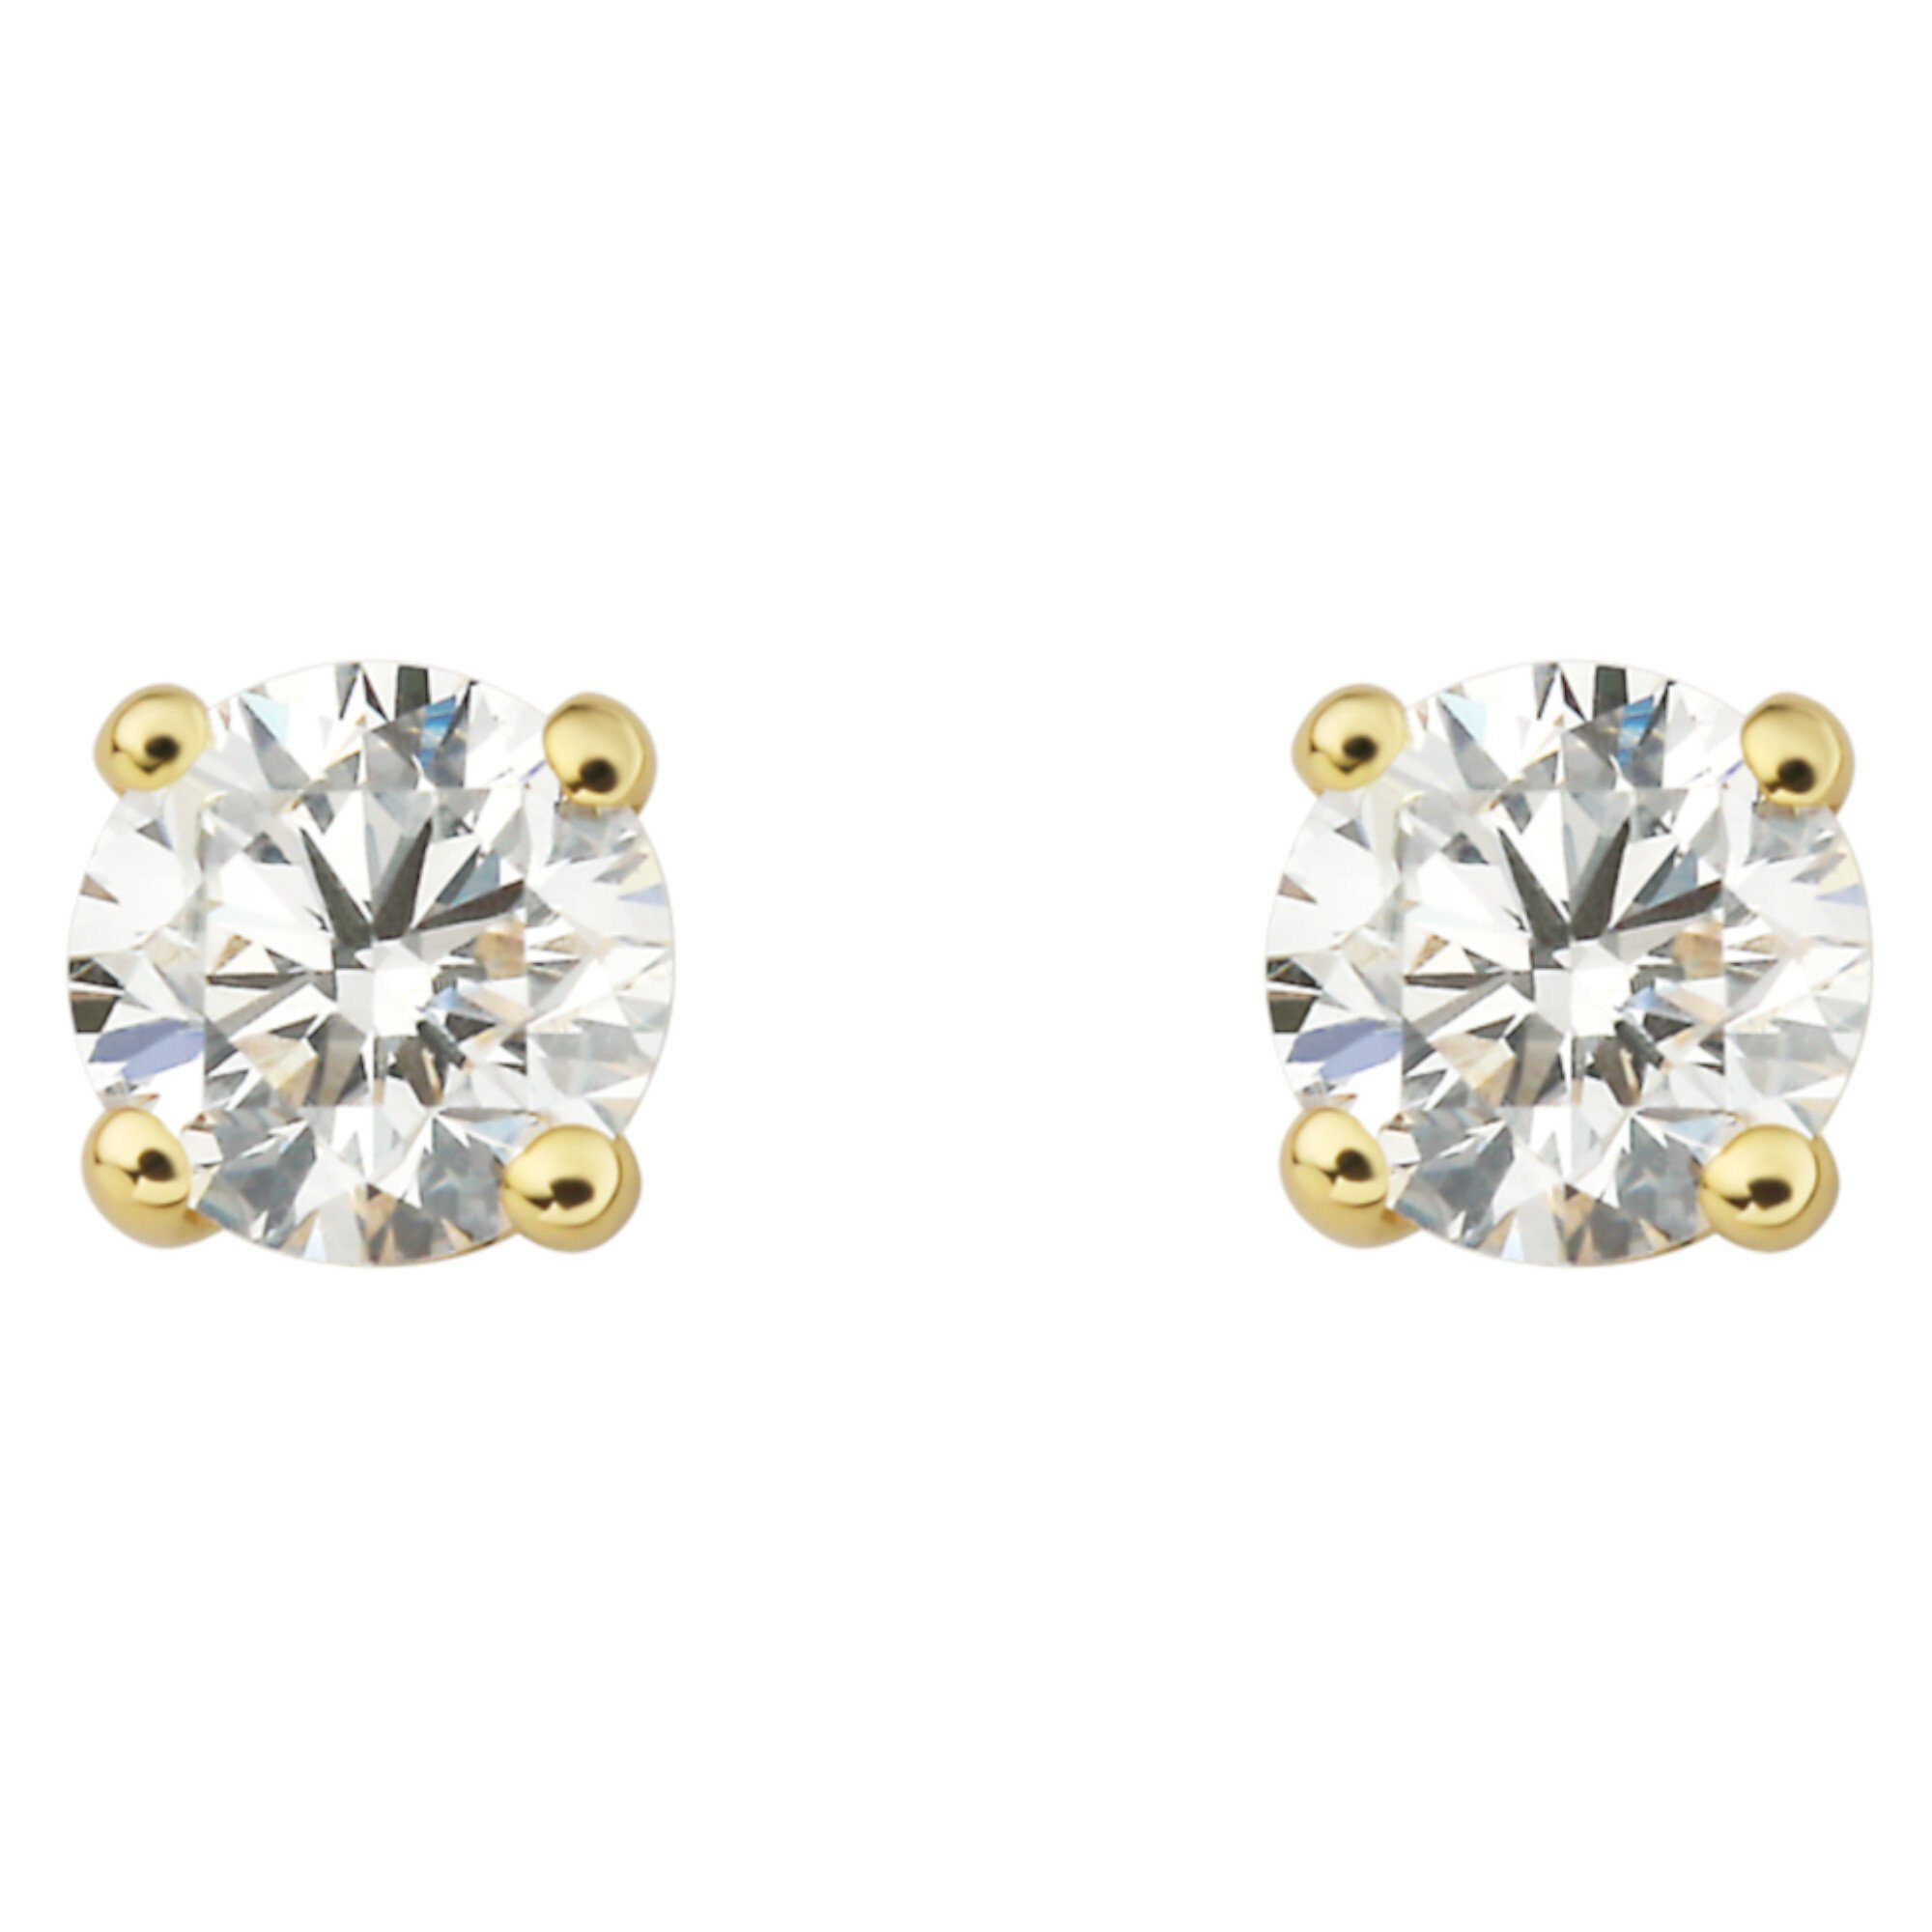 ONE ELEMENT Paar Ohrstecker 0.40 ct Diamant Brillant Ohrringe Ohrstecker aus 750 Gelbgold, Damen Gold Schmuck